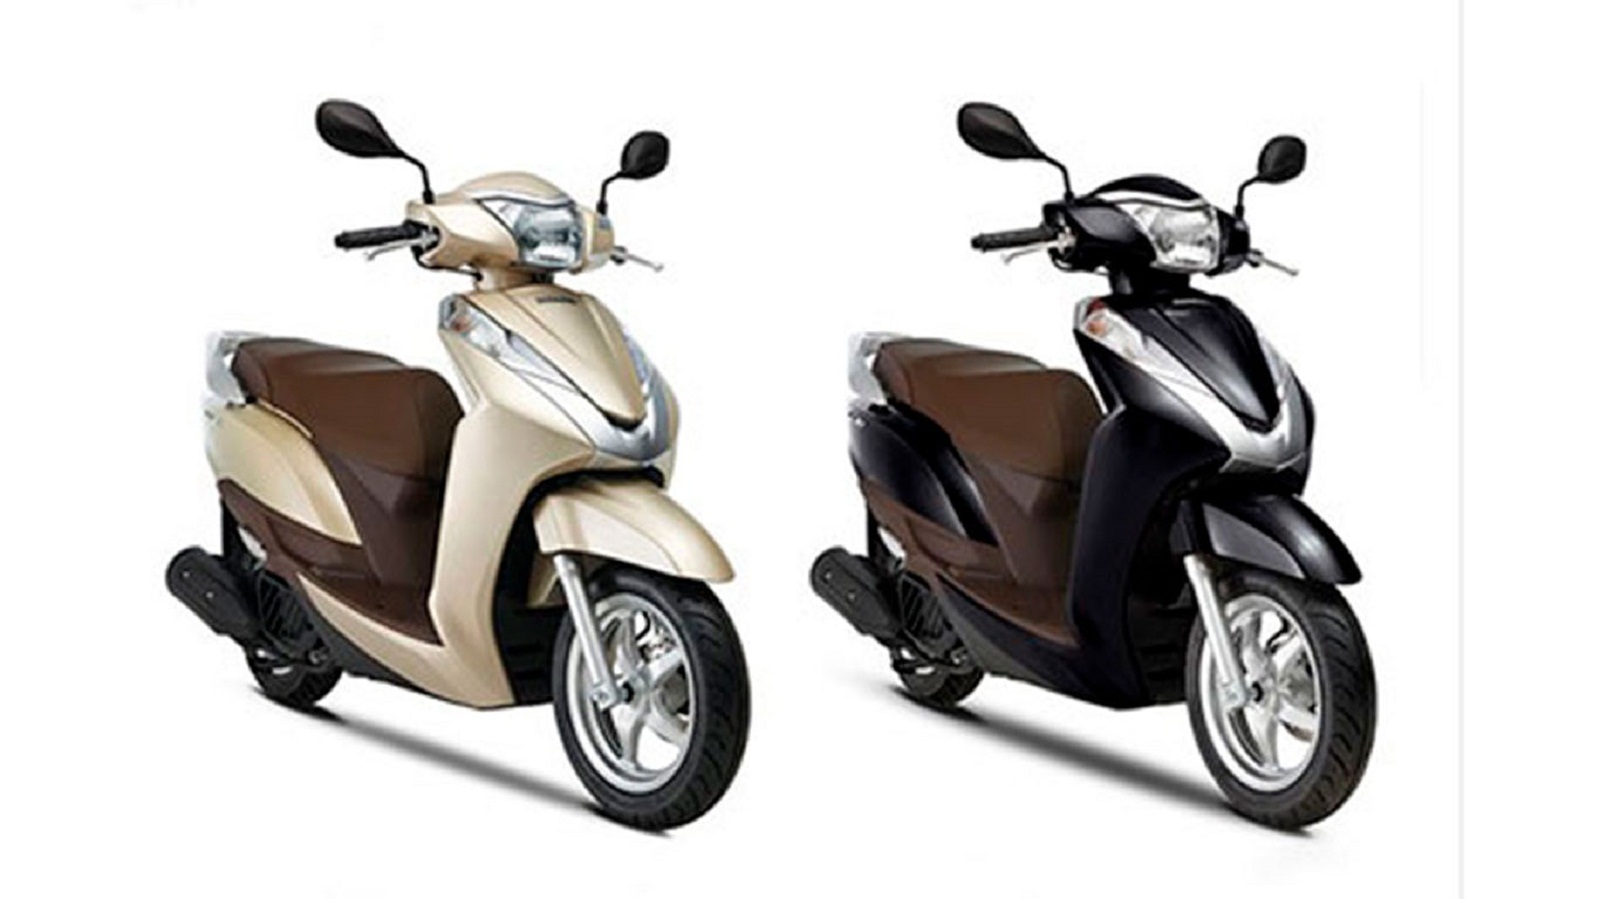 Cập nhật giá bán các mẫu xe máy Honda tại thị trường Việt